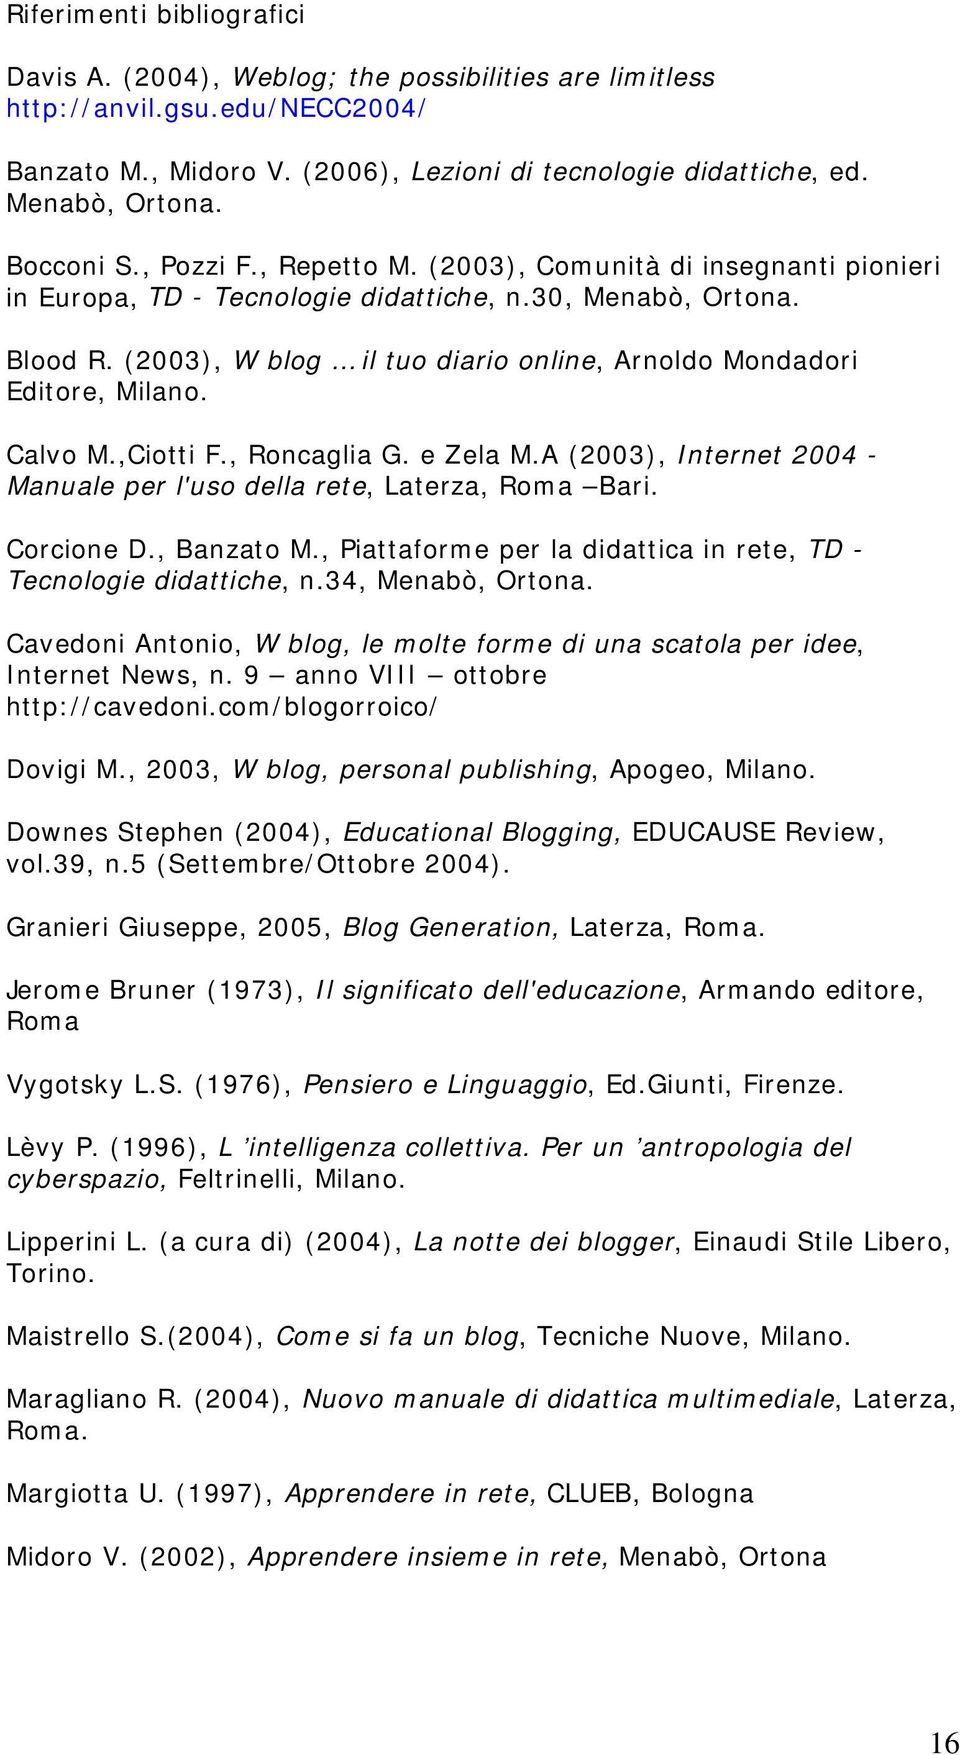 (2003), W blog il tuo diario online, Arnoldo Mondadori Editore, Milano. Calvo M.,Ciotti F., Roncaglia G. e Zela M.A (2003), Internet 2004 - Manuale per l'uso della rete, Laterza, Roma Bari.